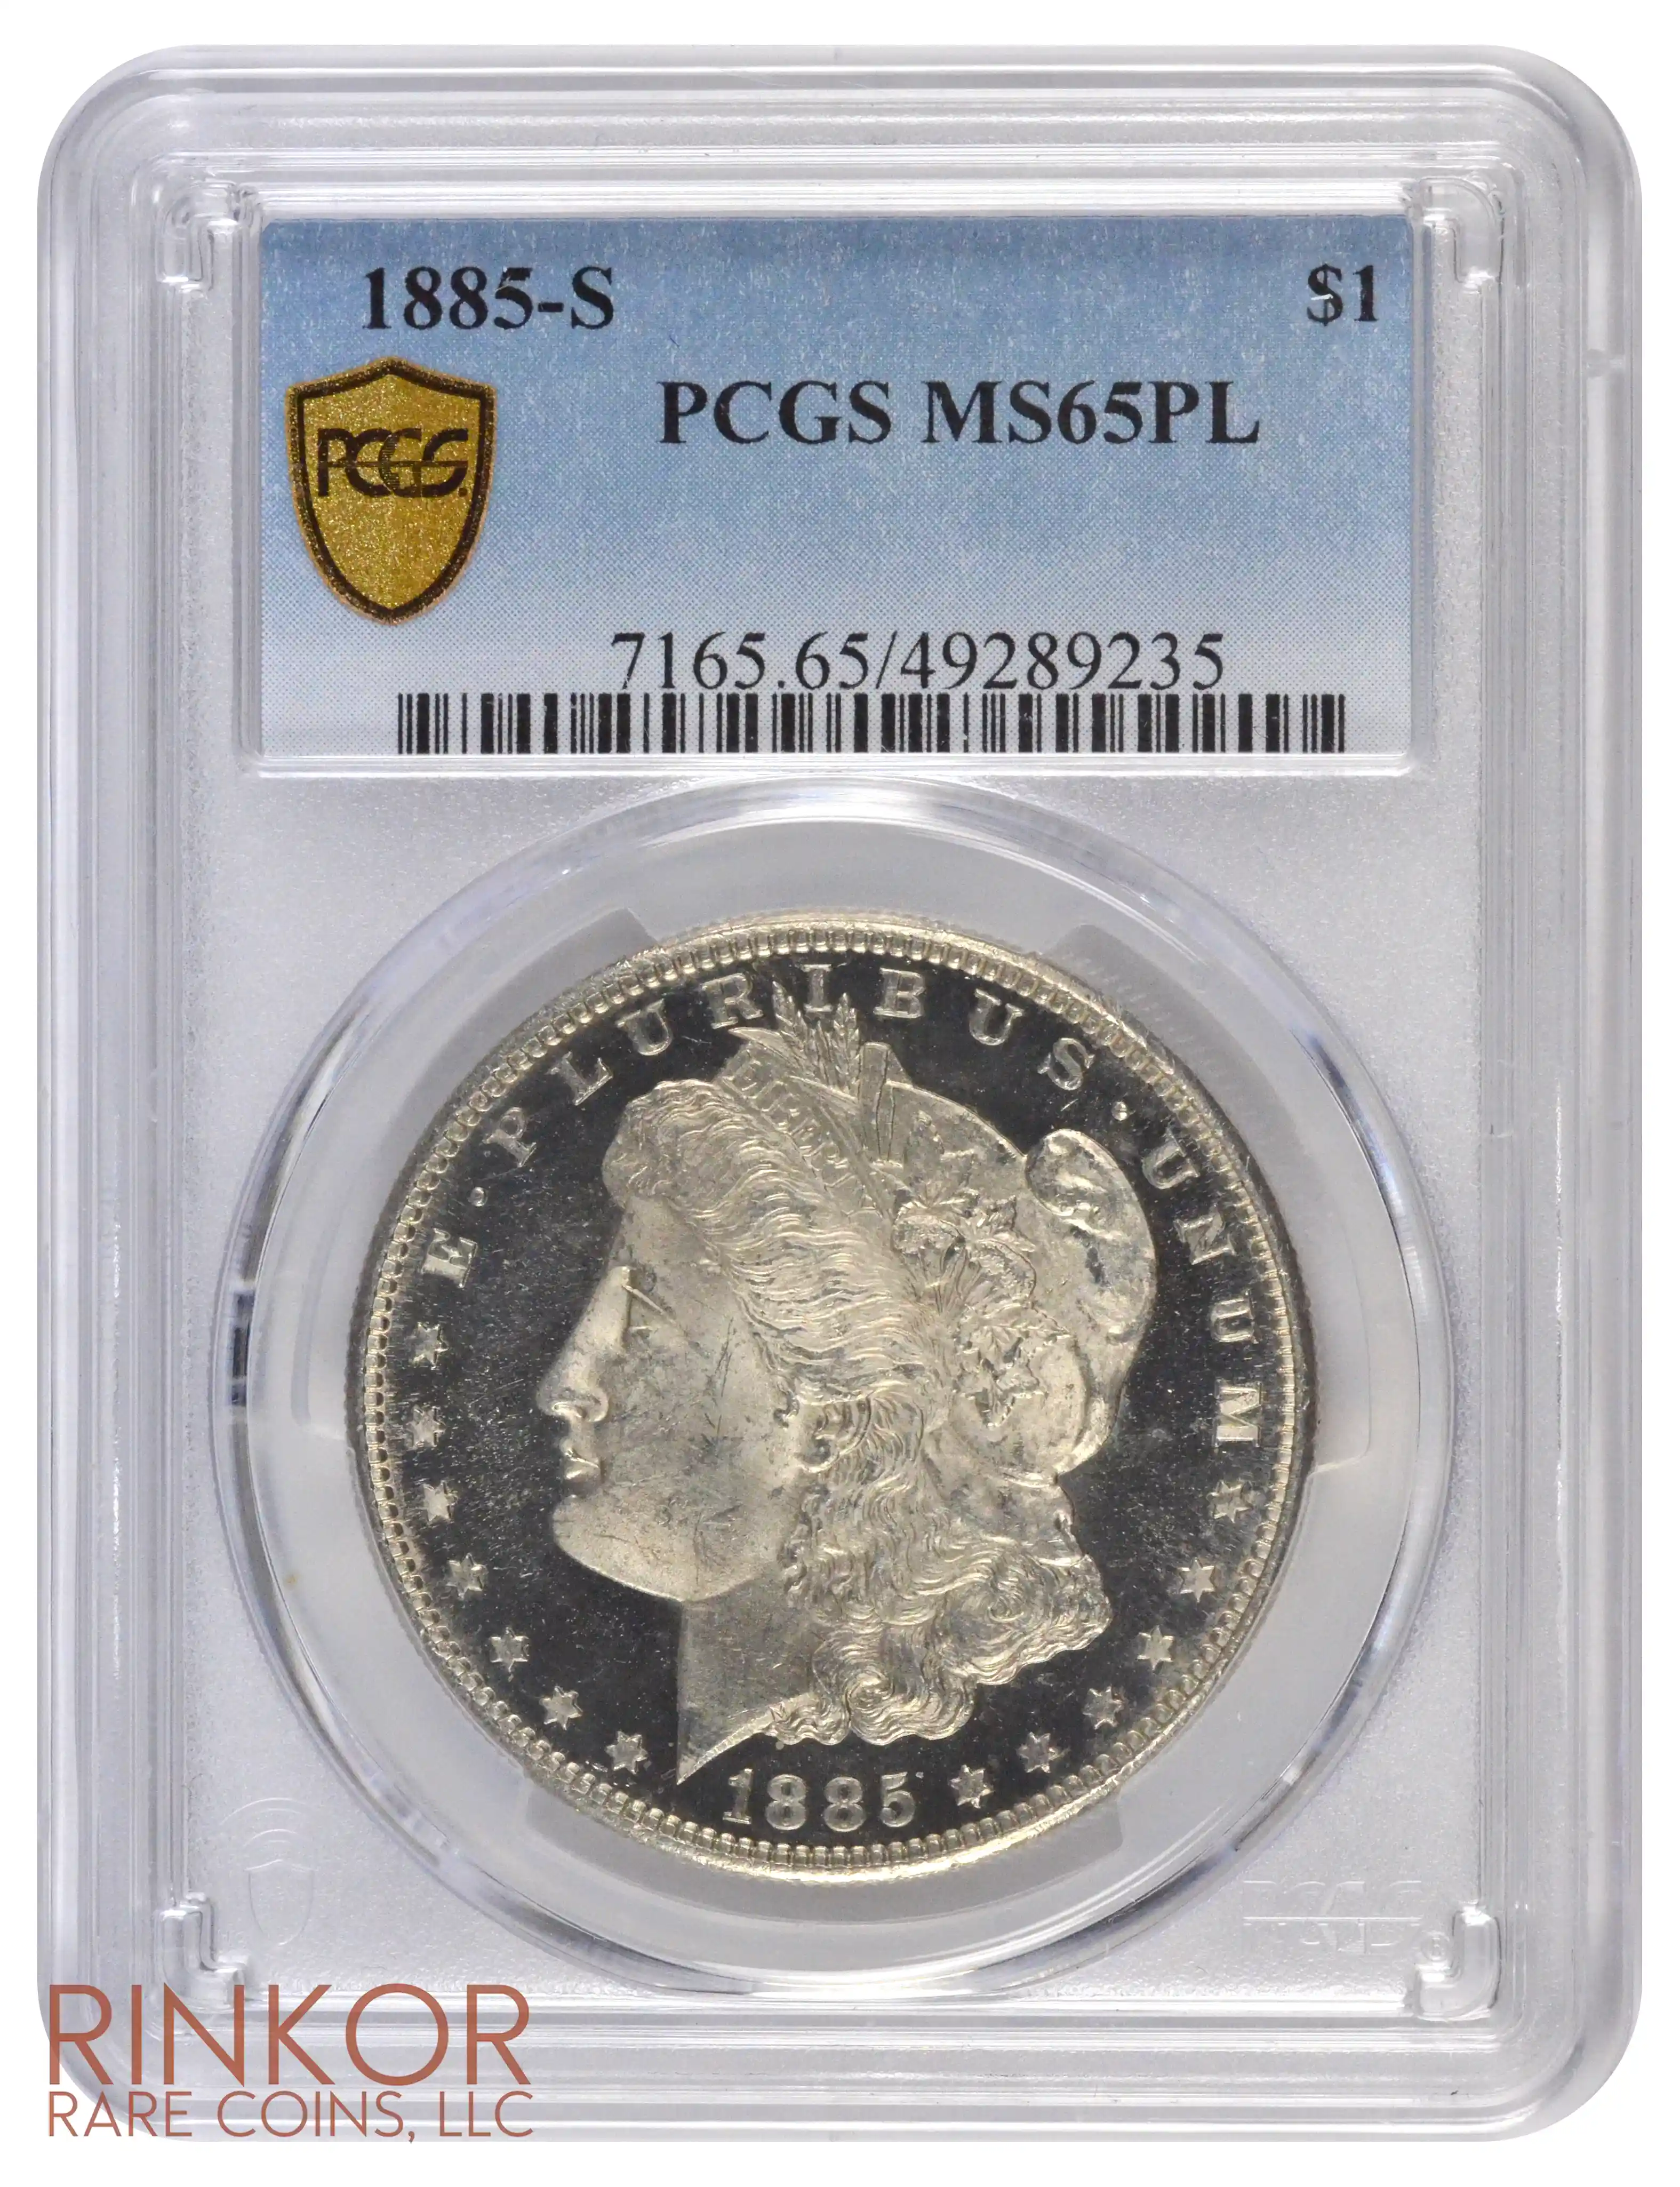 1885-S $1 PCGS